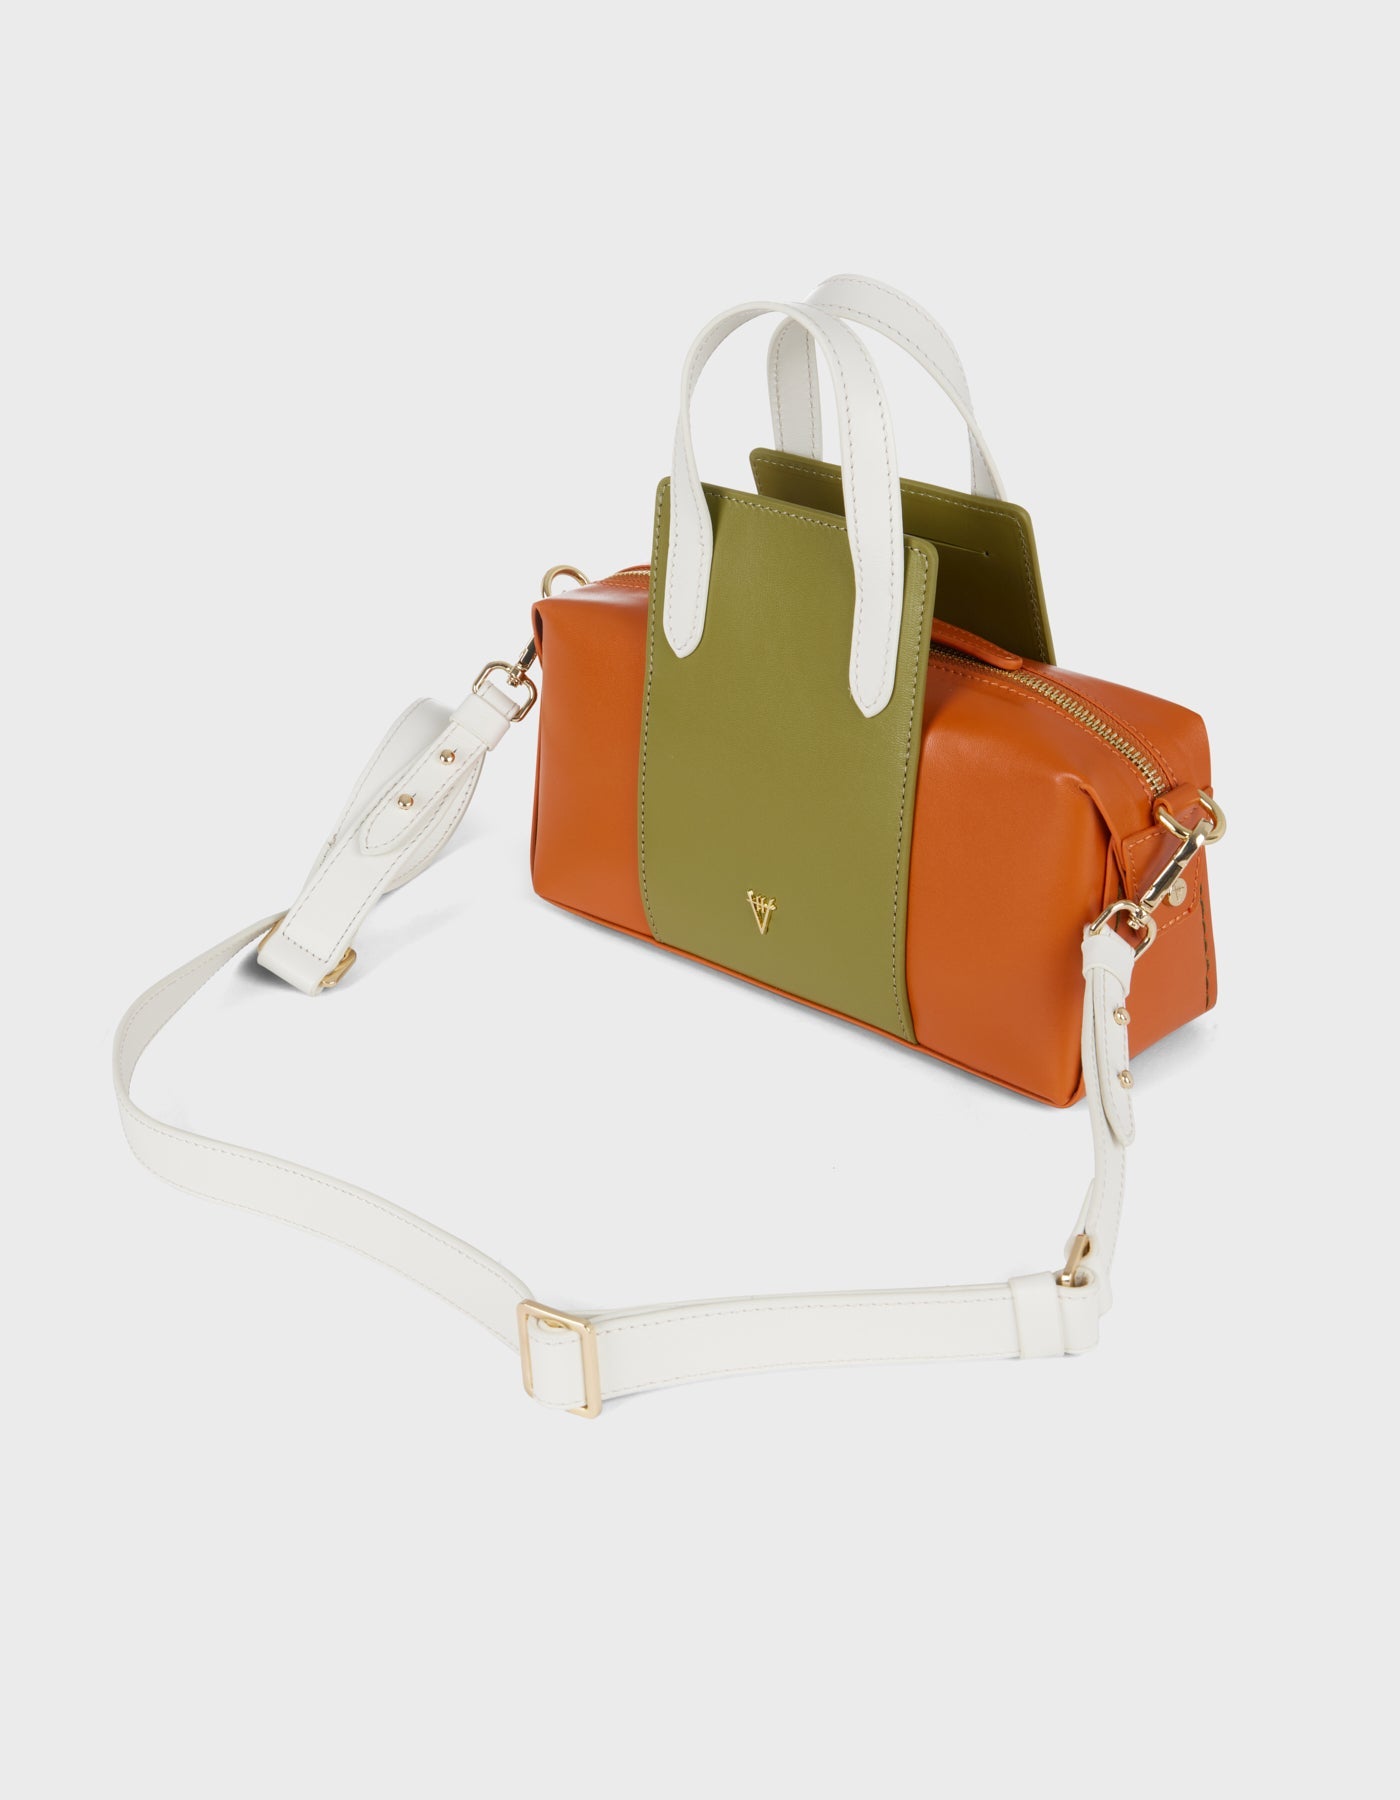 Hiva Atelier | Onsra Cylinder Shoulder Bag Burnt Orange & Olive & Bone | Beautiful and Versatile